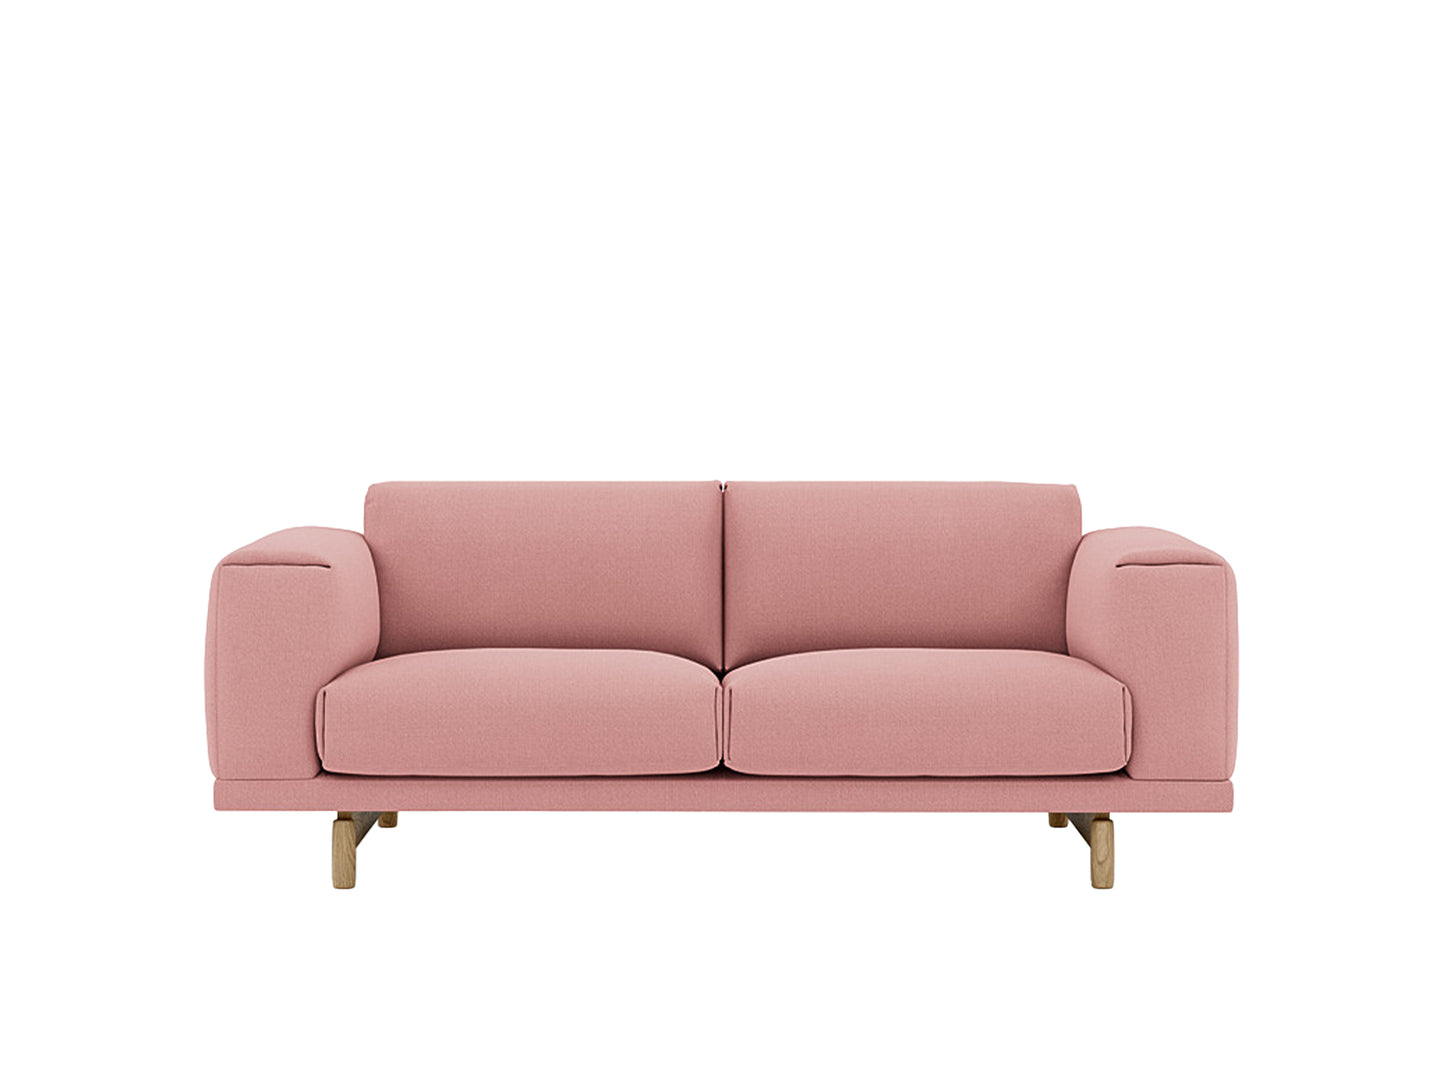 Rest Sofa by Muuto - 2 Seater / Vidar 633